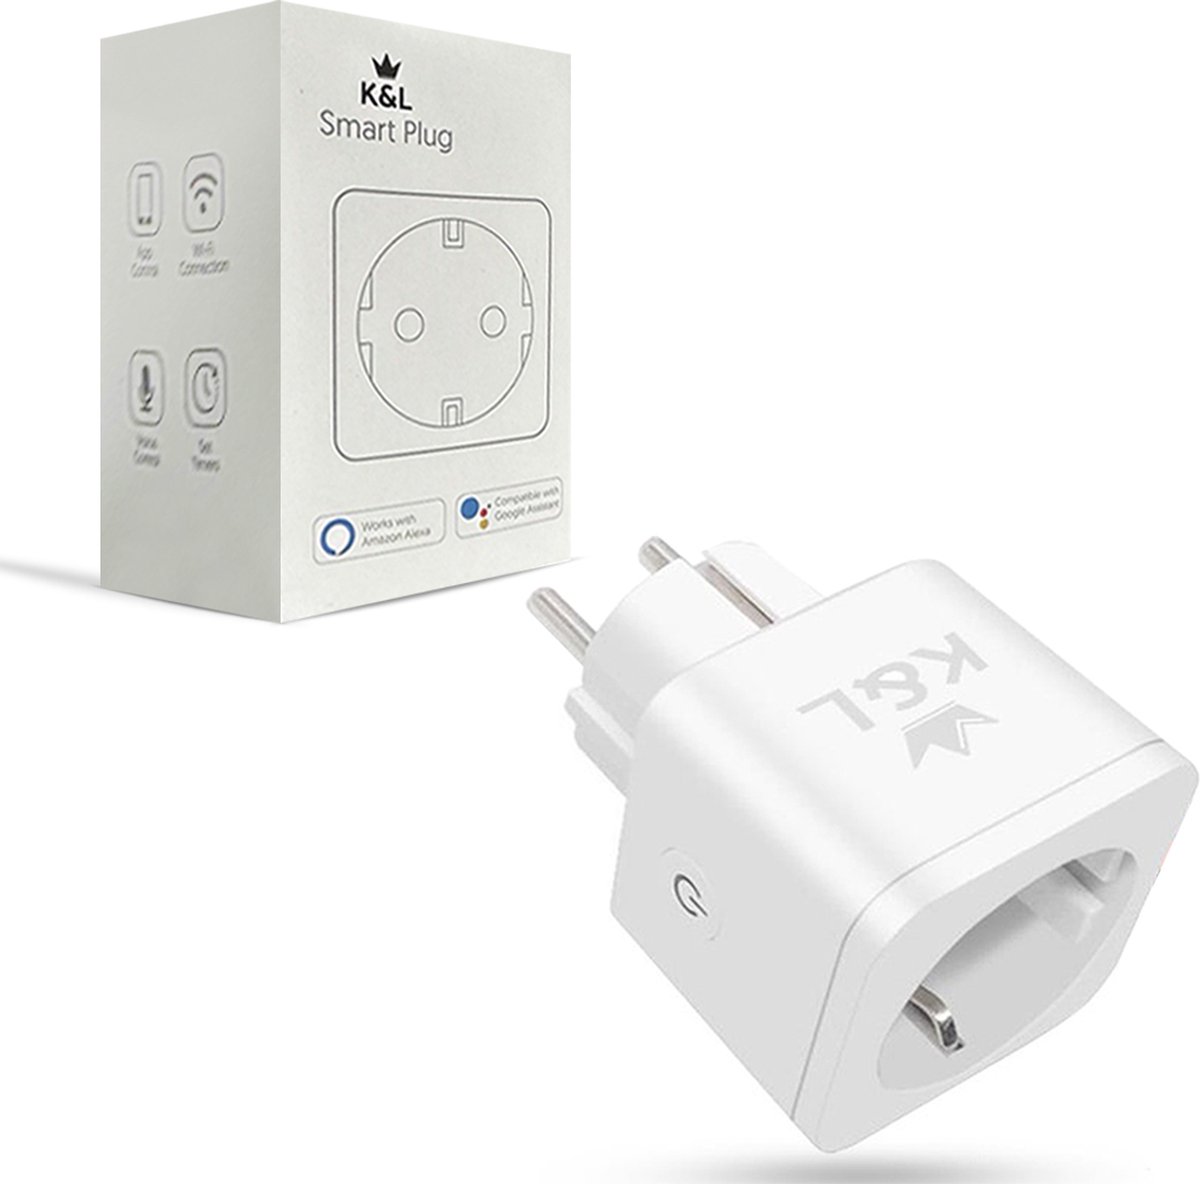 K&L Slimme Stekker - Smart Plug - Incl. Energiemeter & Tijdschakelaar